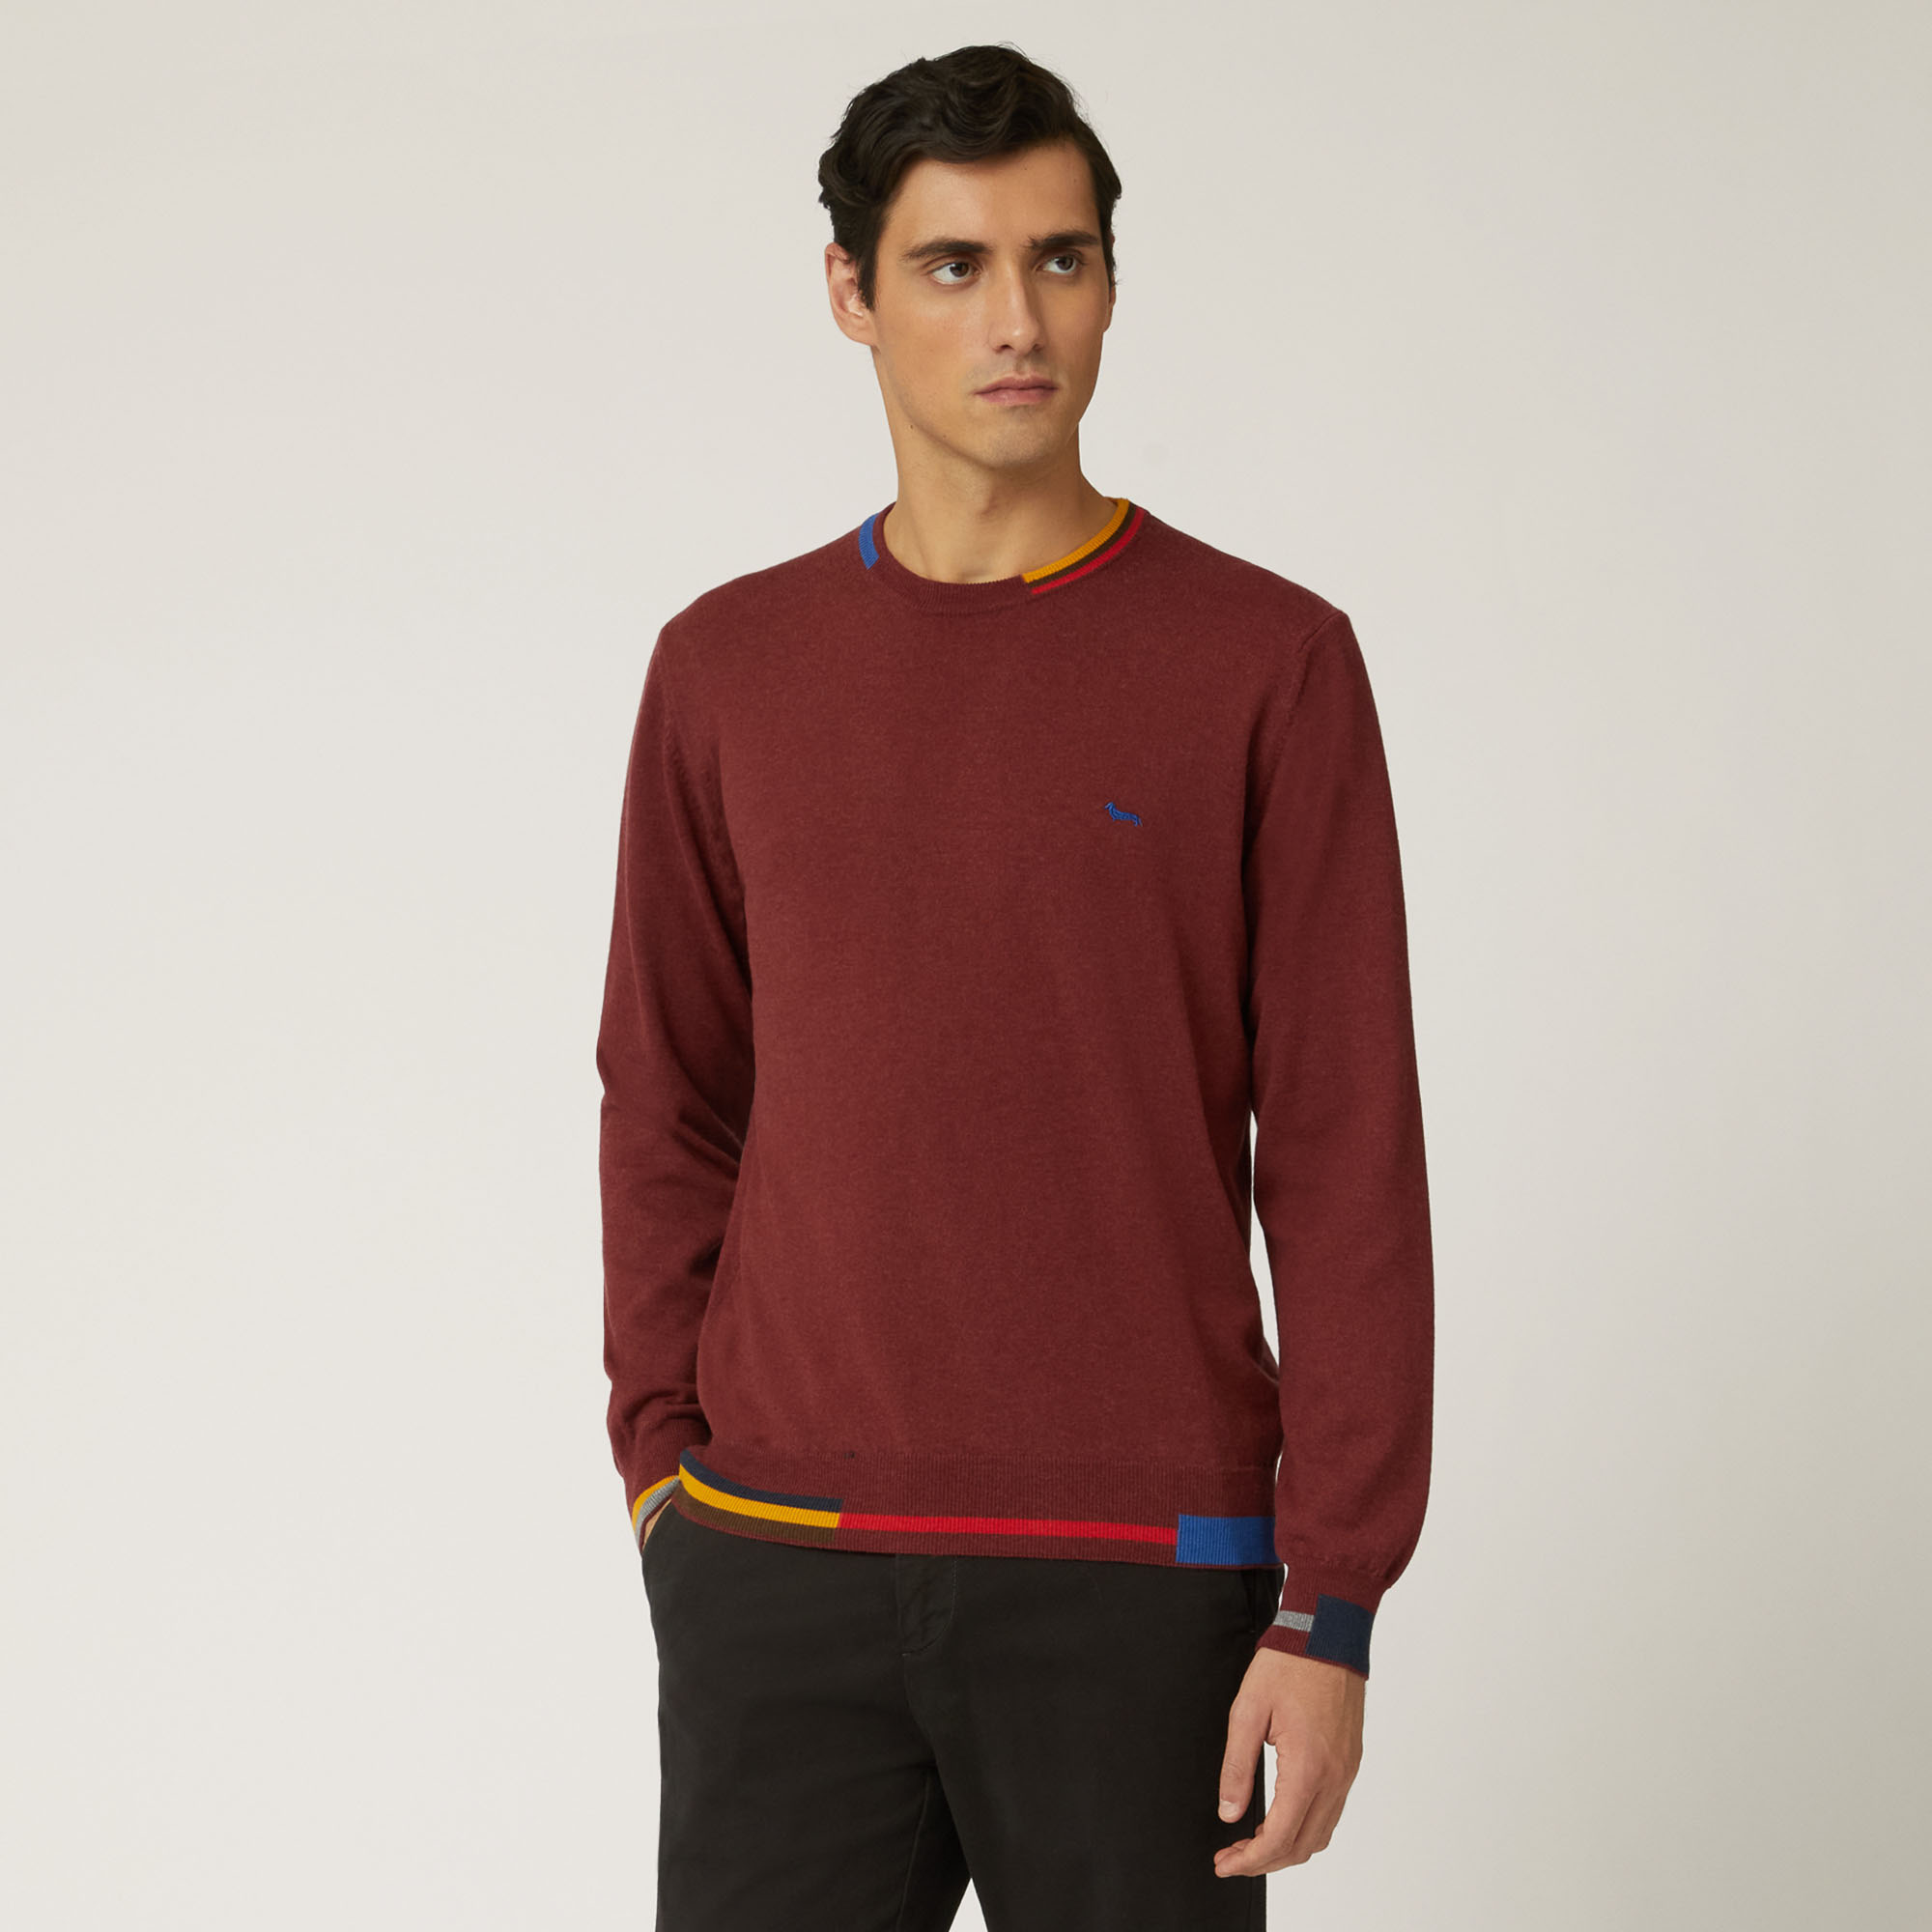 Pullover Mit Rundhalsausschnitt Aus Baumwolle Und Wolle Mit Kontrastierenden Details, Rot, large